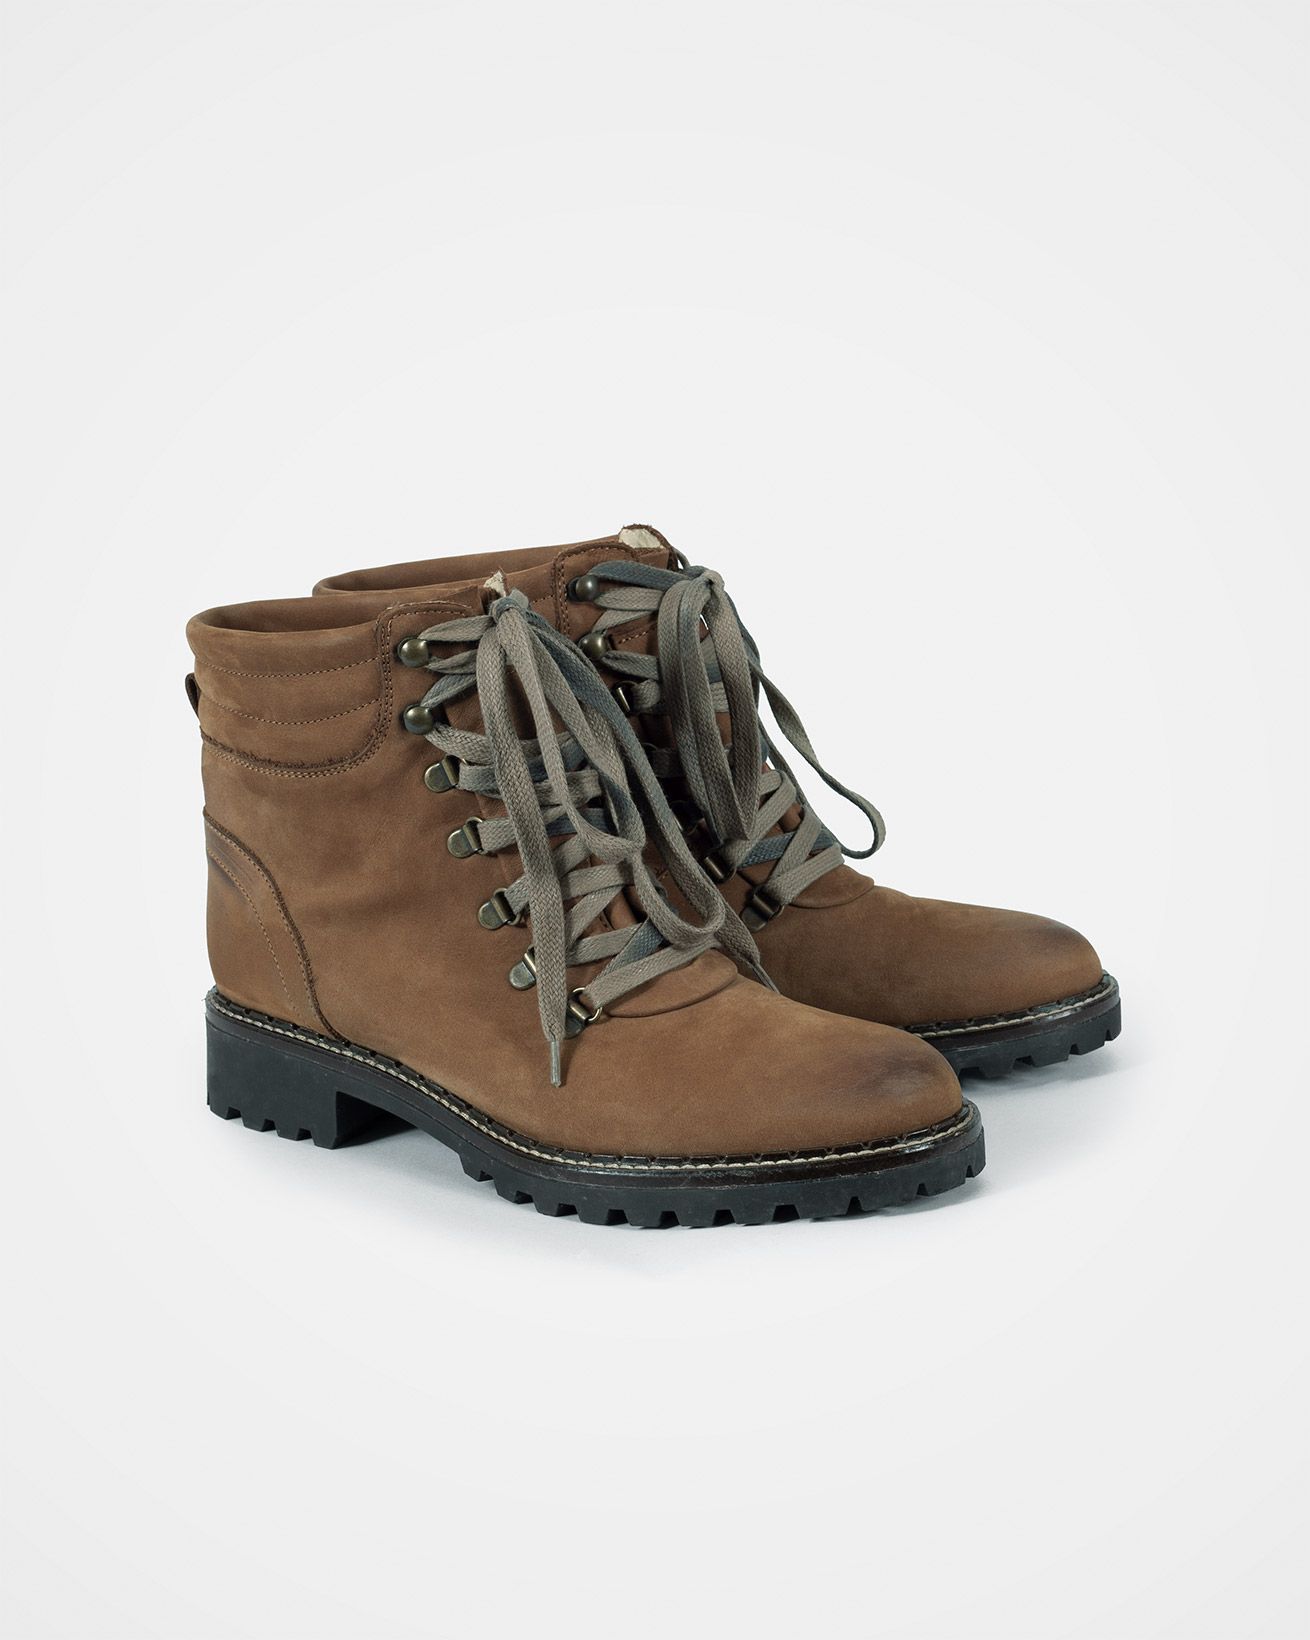 7621_hiker-boots_cognac_pair.jpg